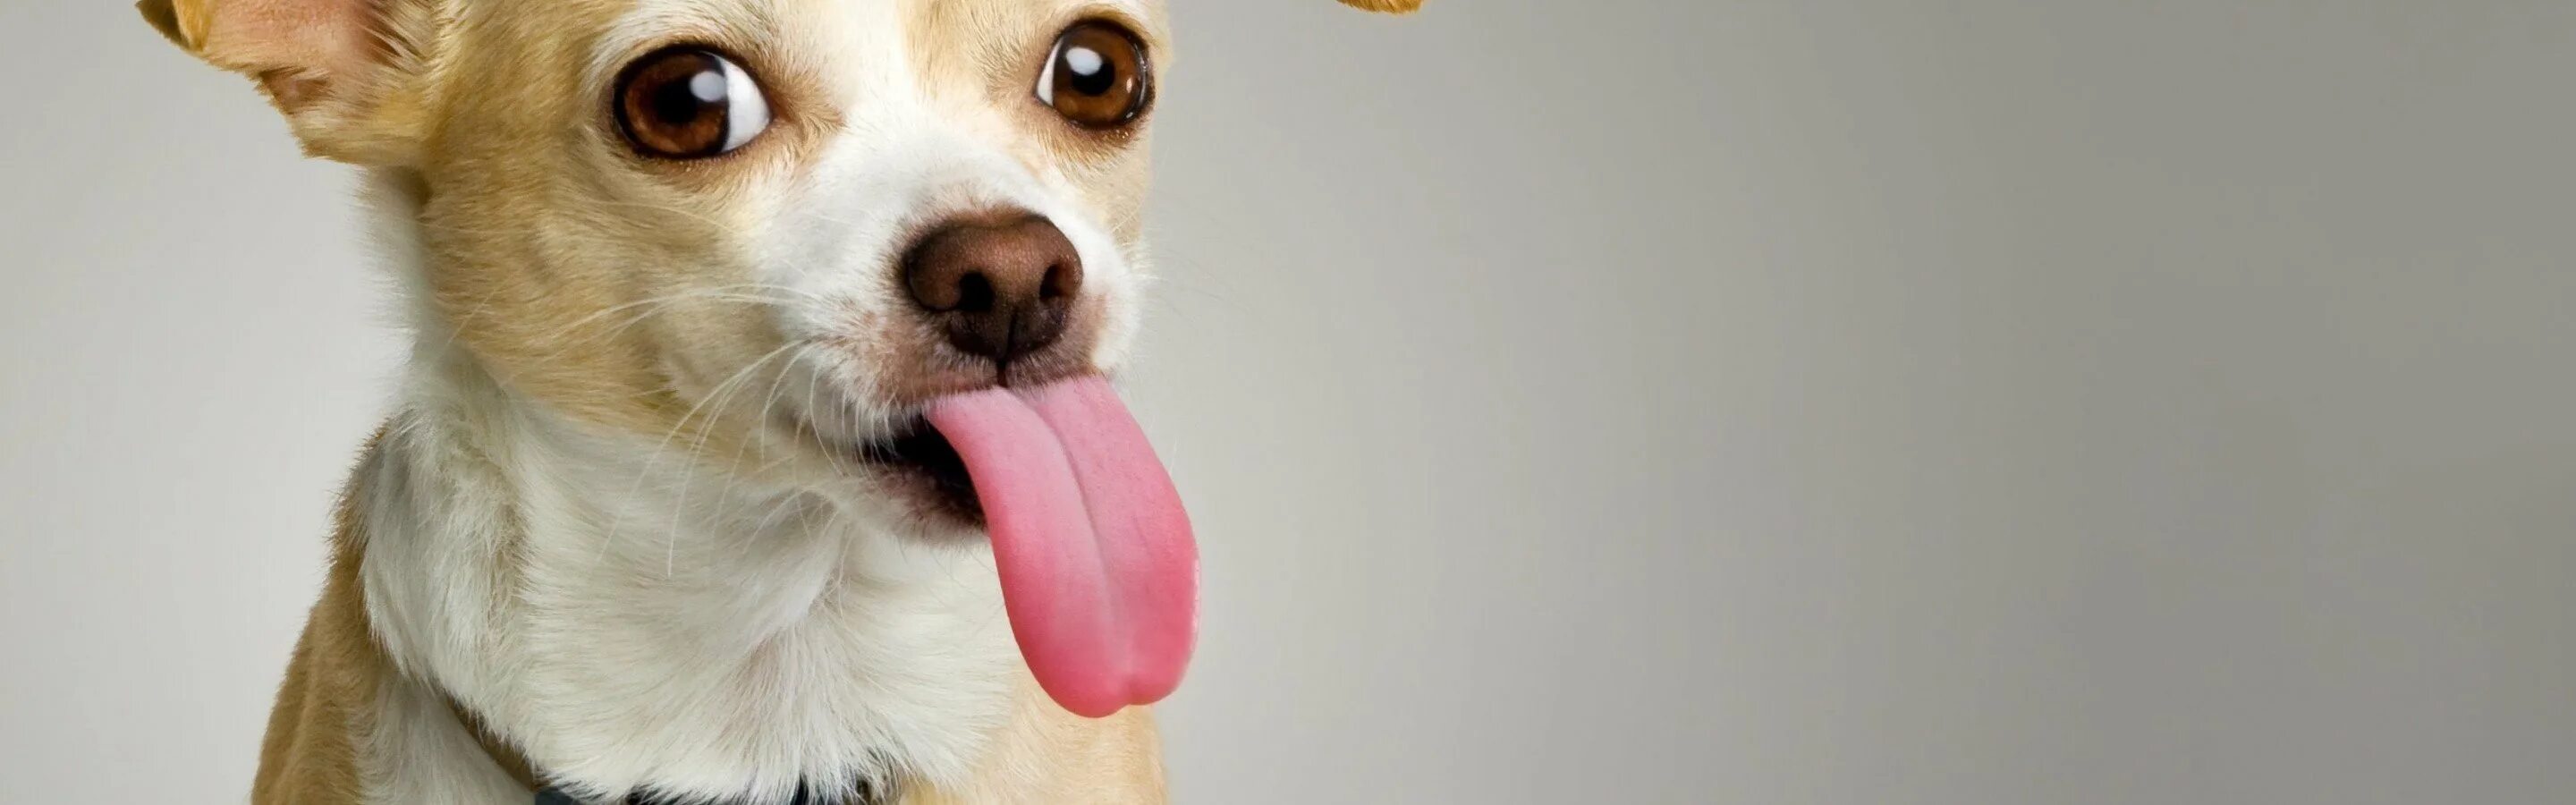 Свесив набок длинный розовый язык. Собака с высунутым языком. Смешные собаки. Фото собаки с высунутым языком. Смешная собака на белом фоне.